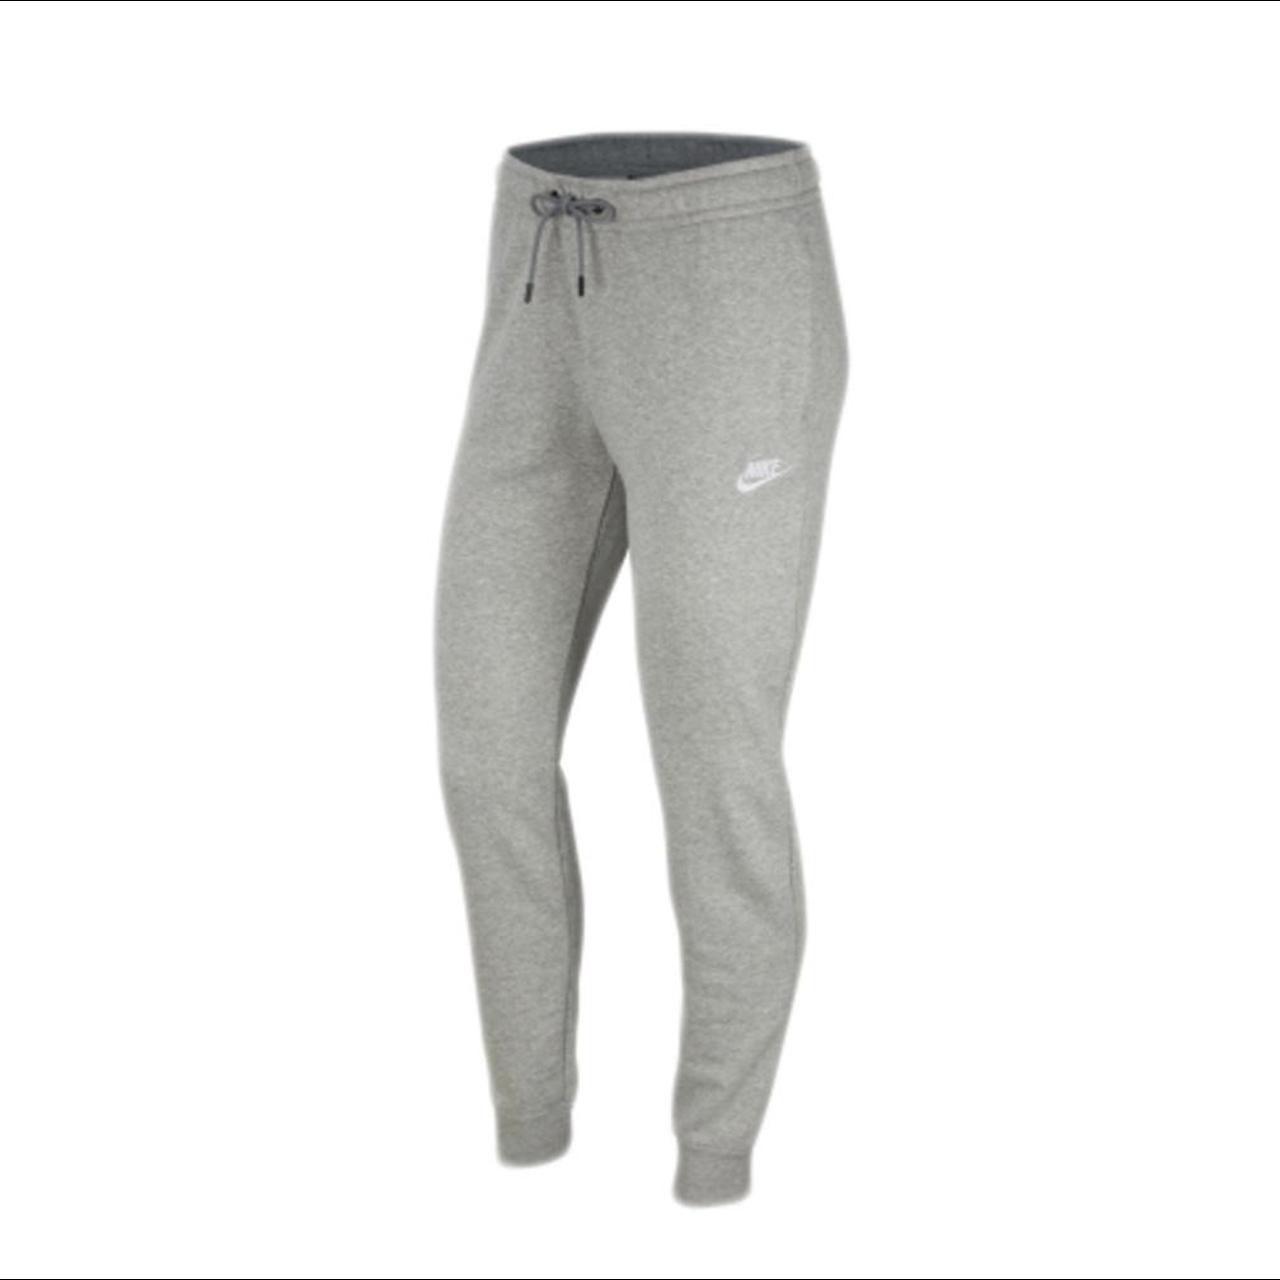 Women's grey Nike essential Fleece sweats #nike #new - Depop